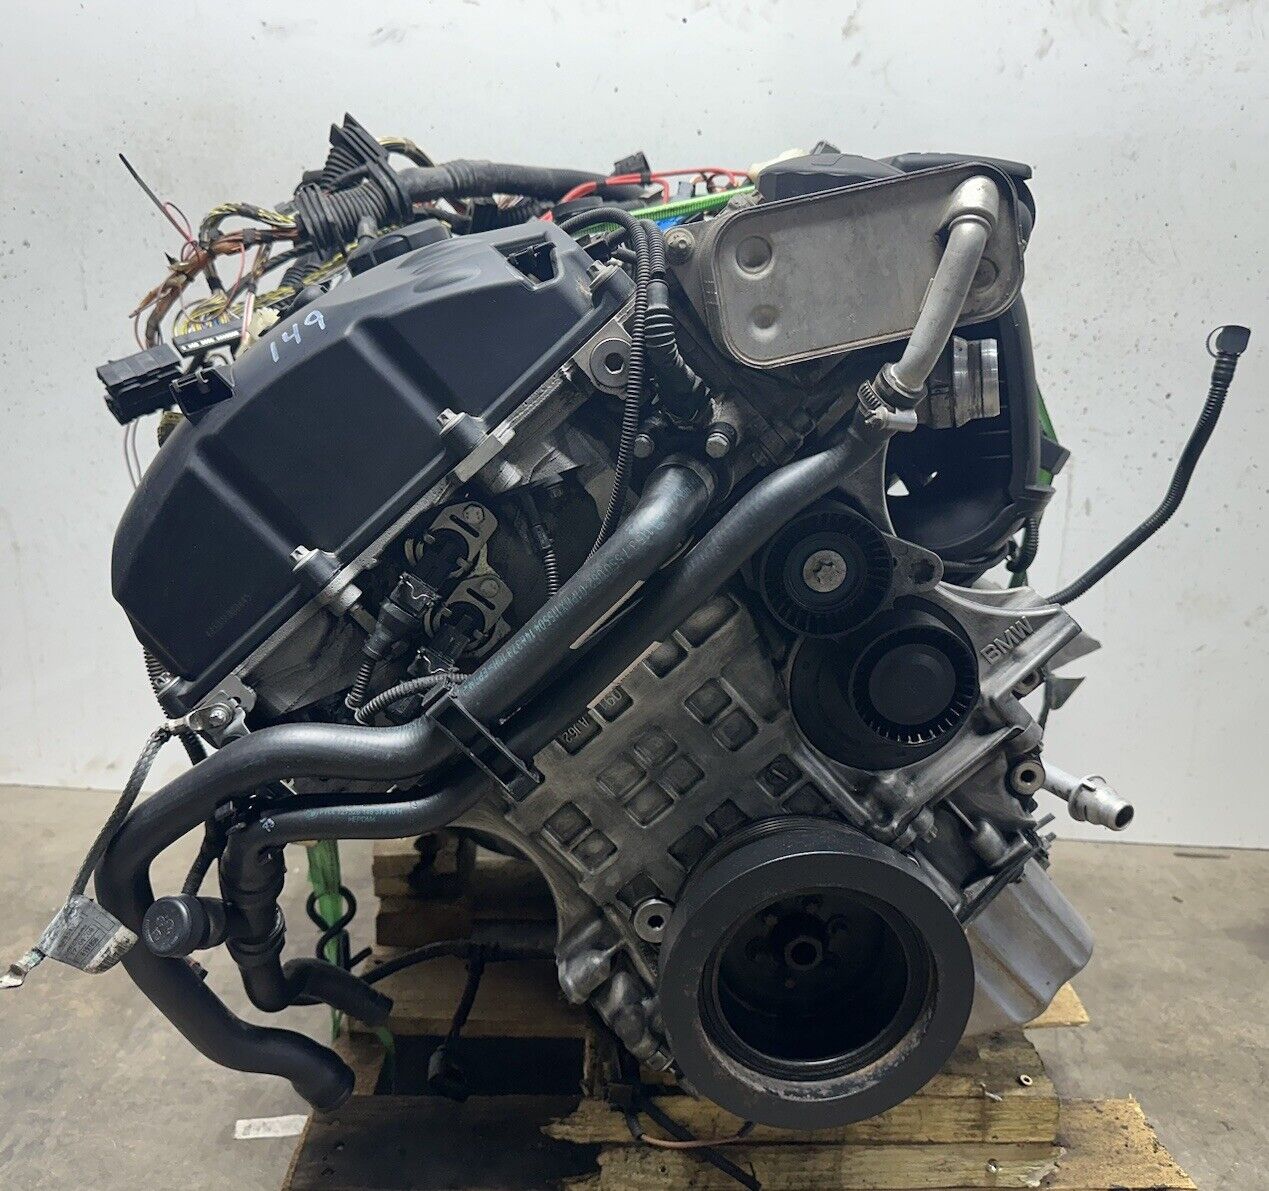 BMW X5 3.0 Liters AWD engines 2006 to 2013